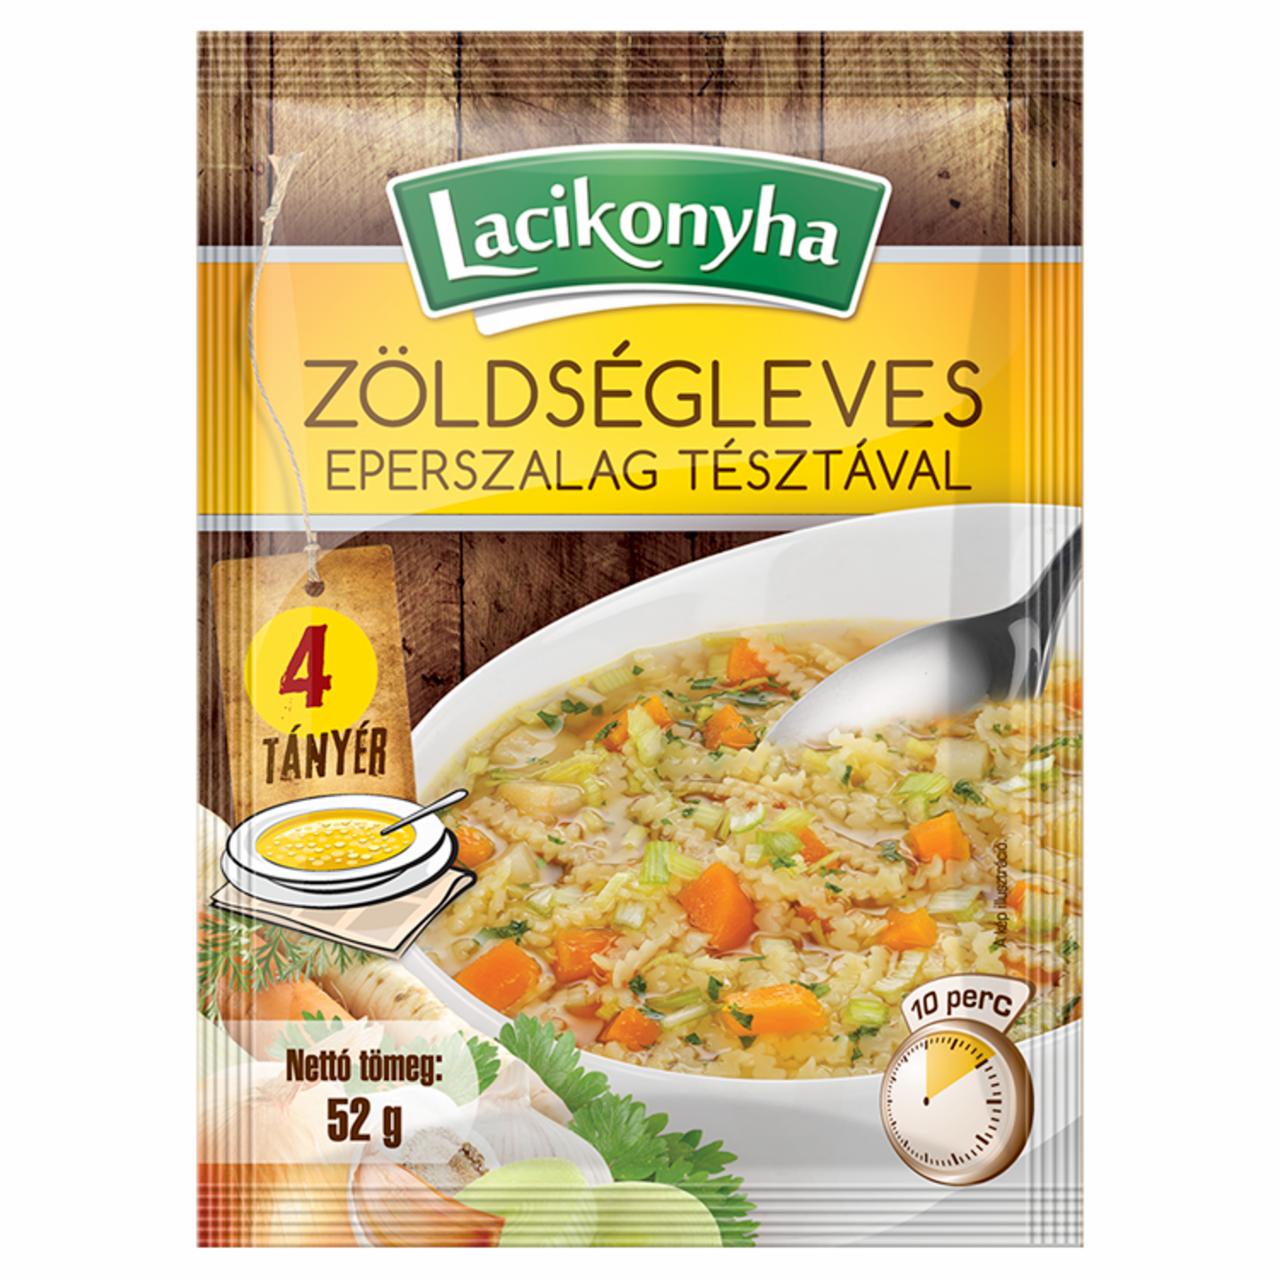 Képek - Lacikonyha zöldségleves eperszalag tésztával 52 g